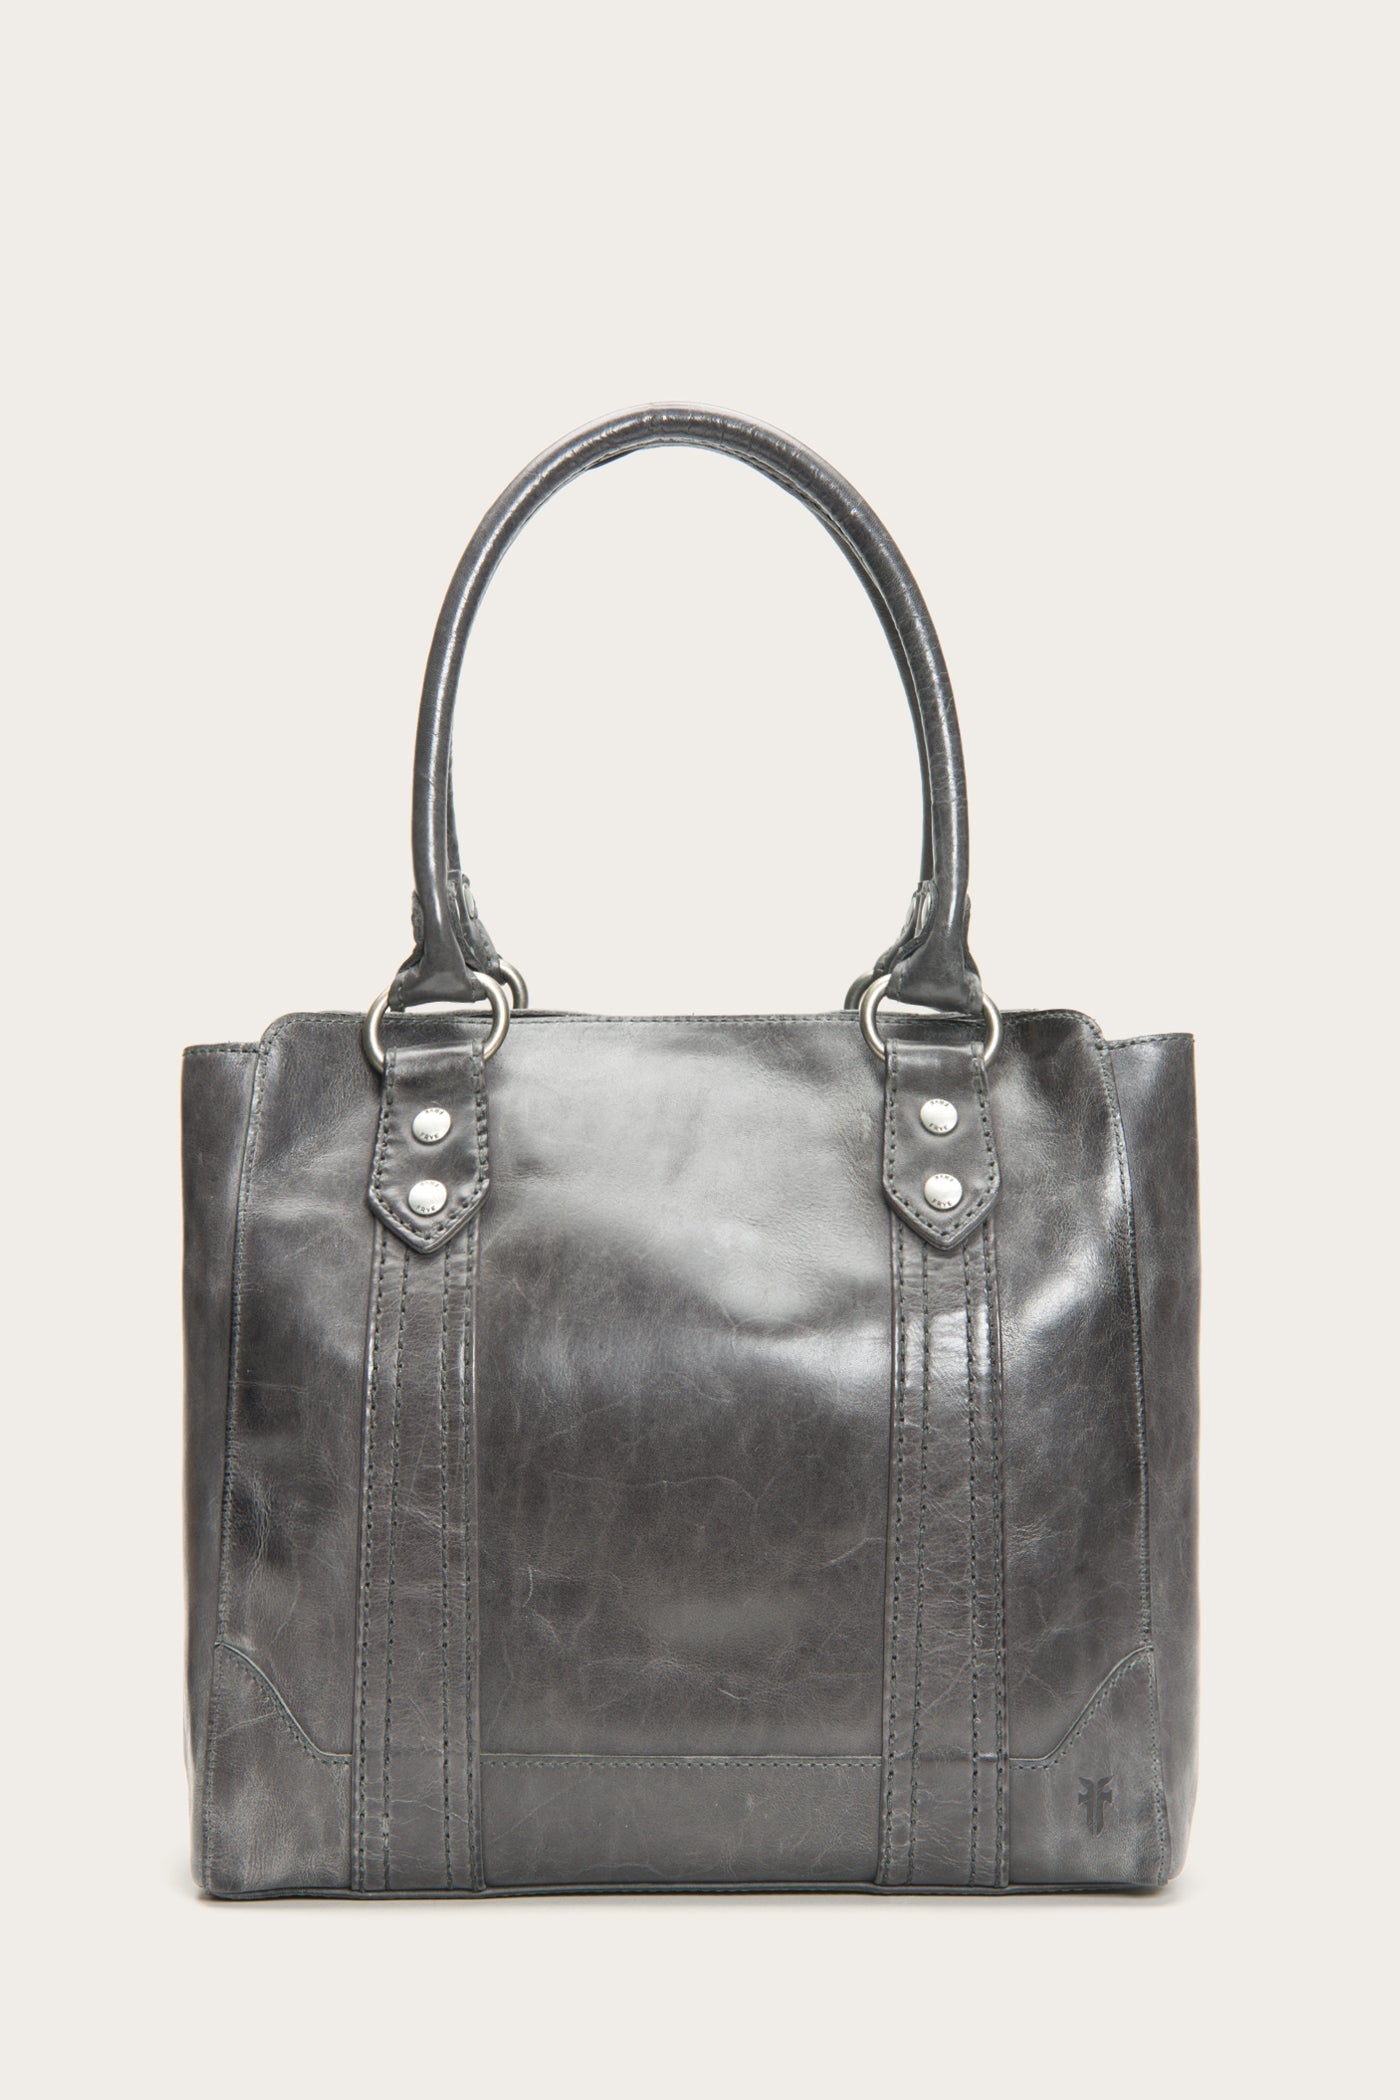 FRYE Women Handbags - Vestiaire Collective